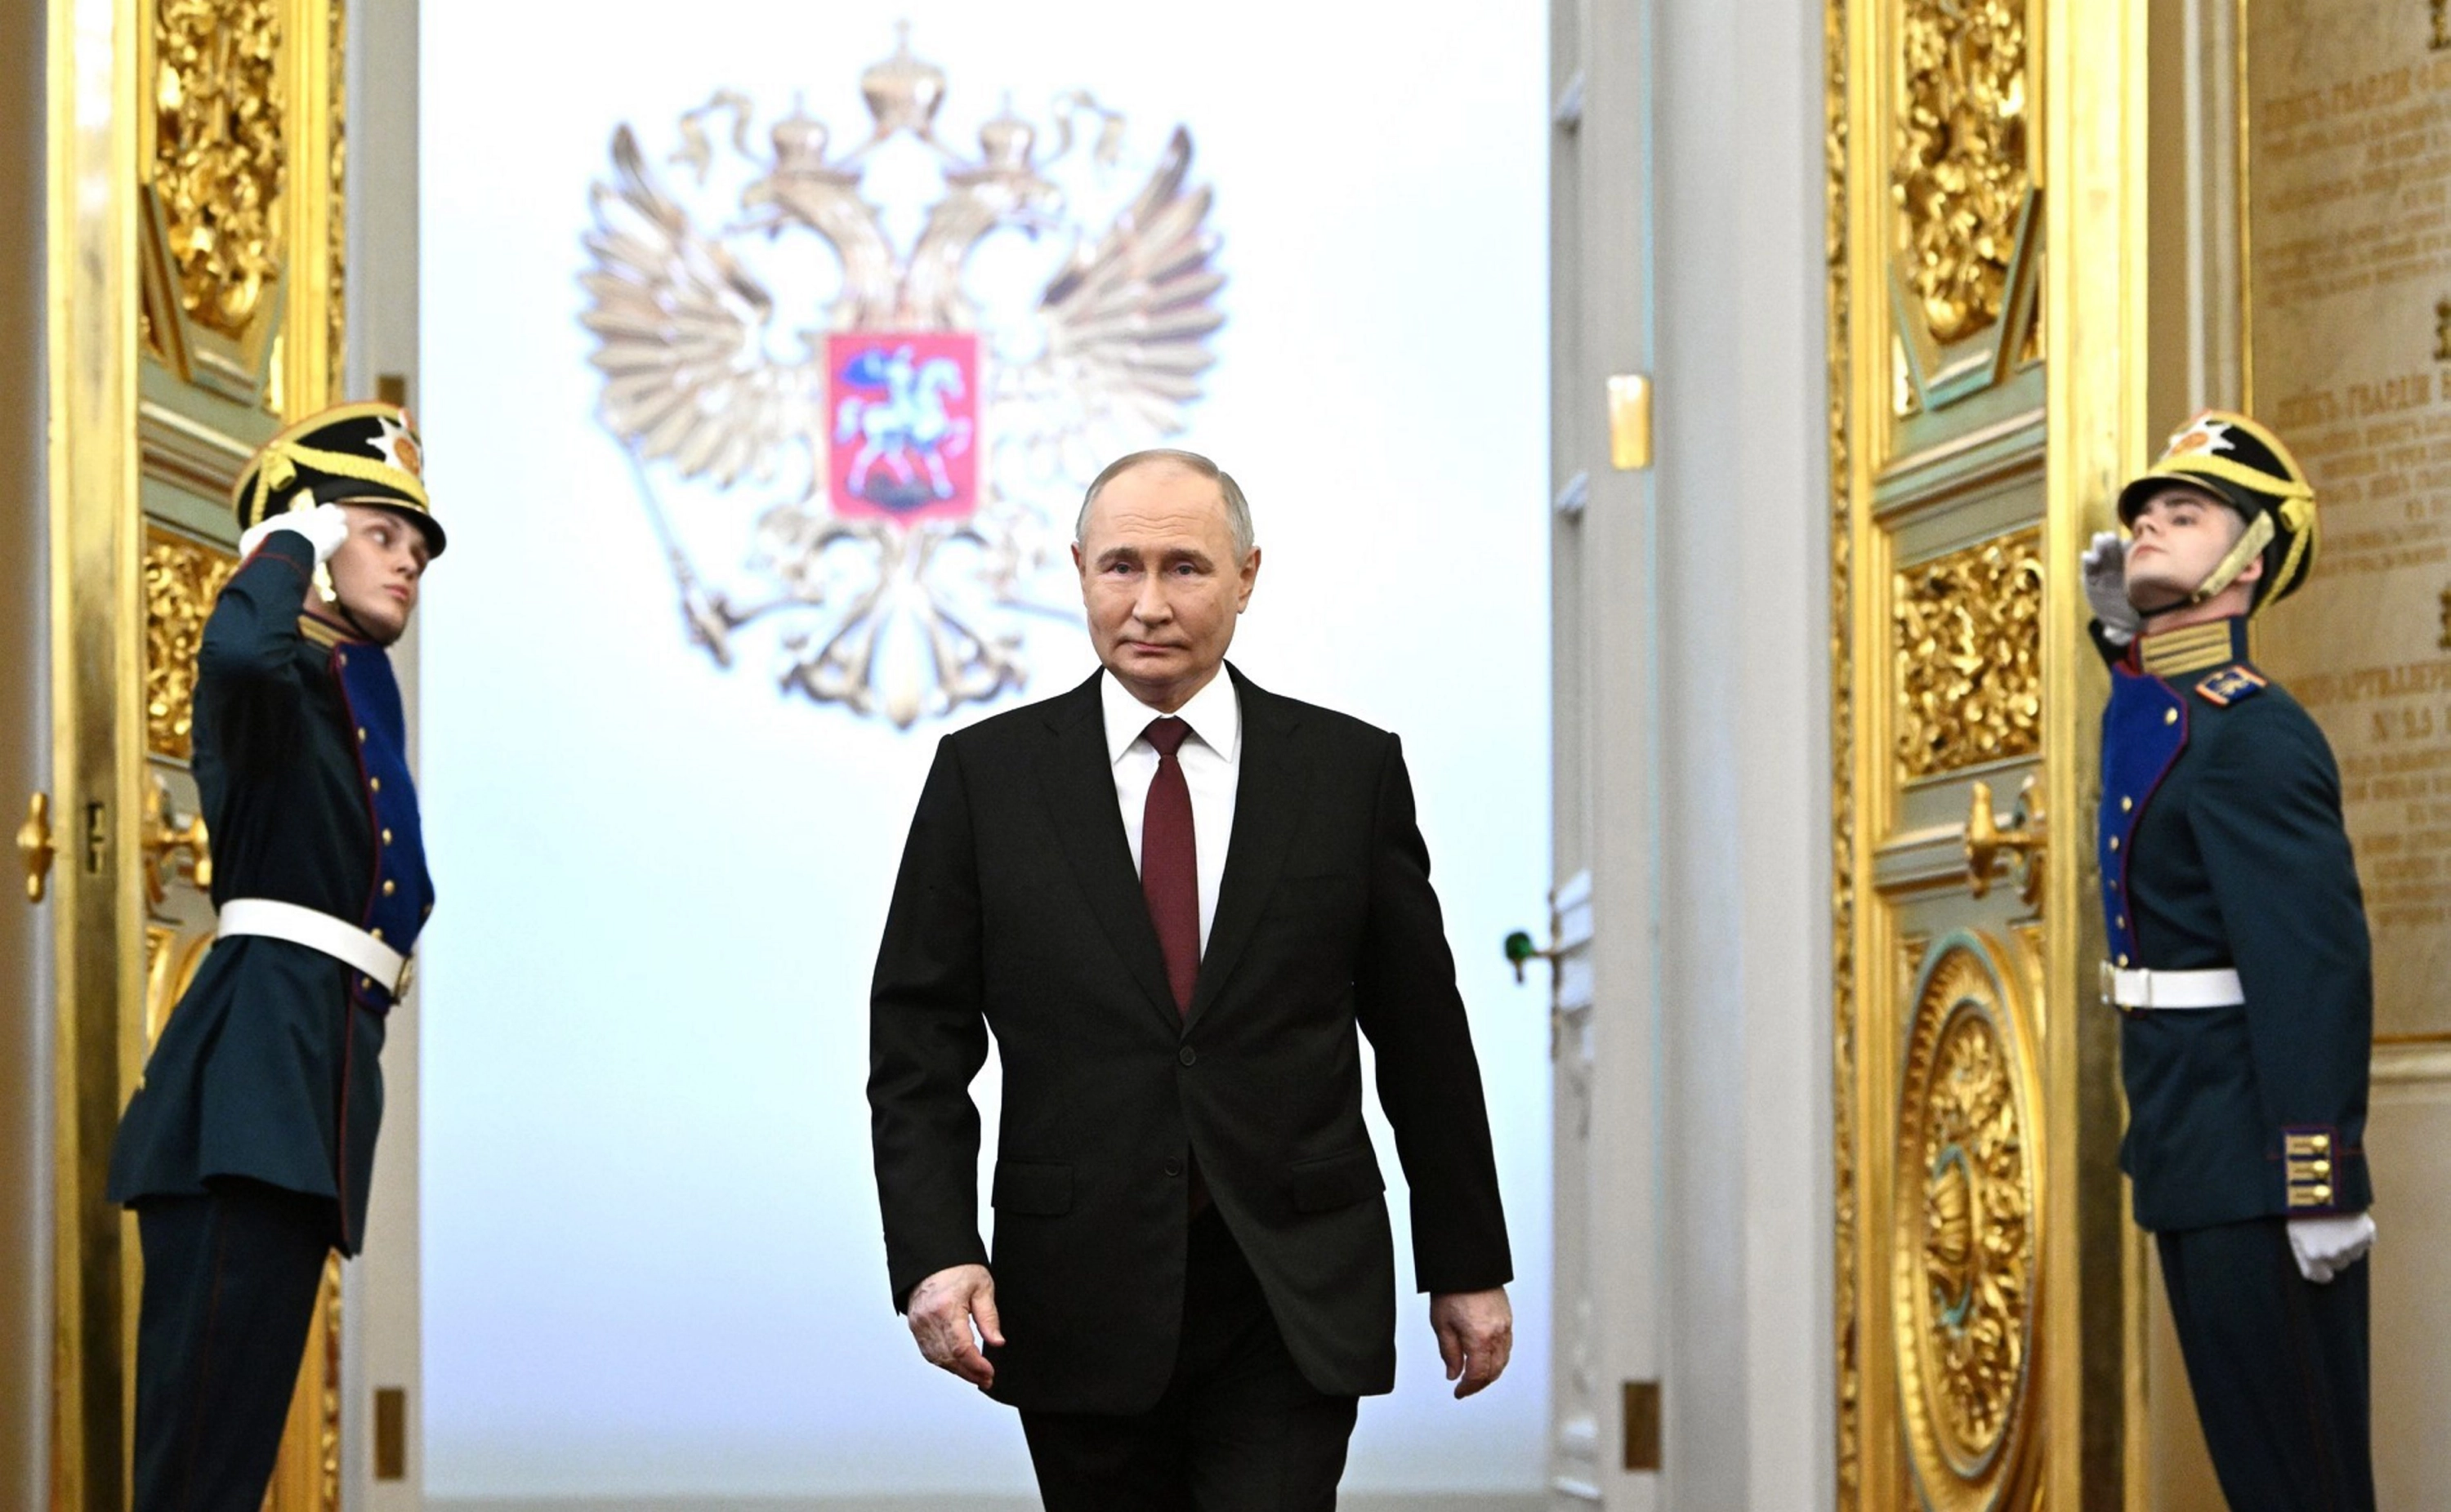 Putin asegura en el Día de la Victoria que "hará todo lo posible para evitar" un conflicto mundial pese al "revanchismo" occidental